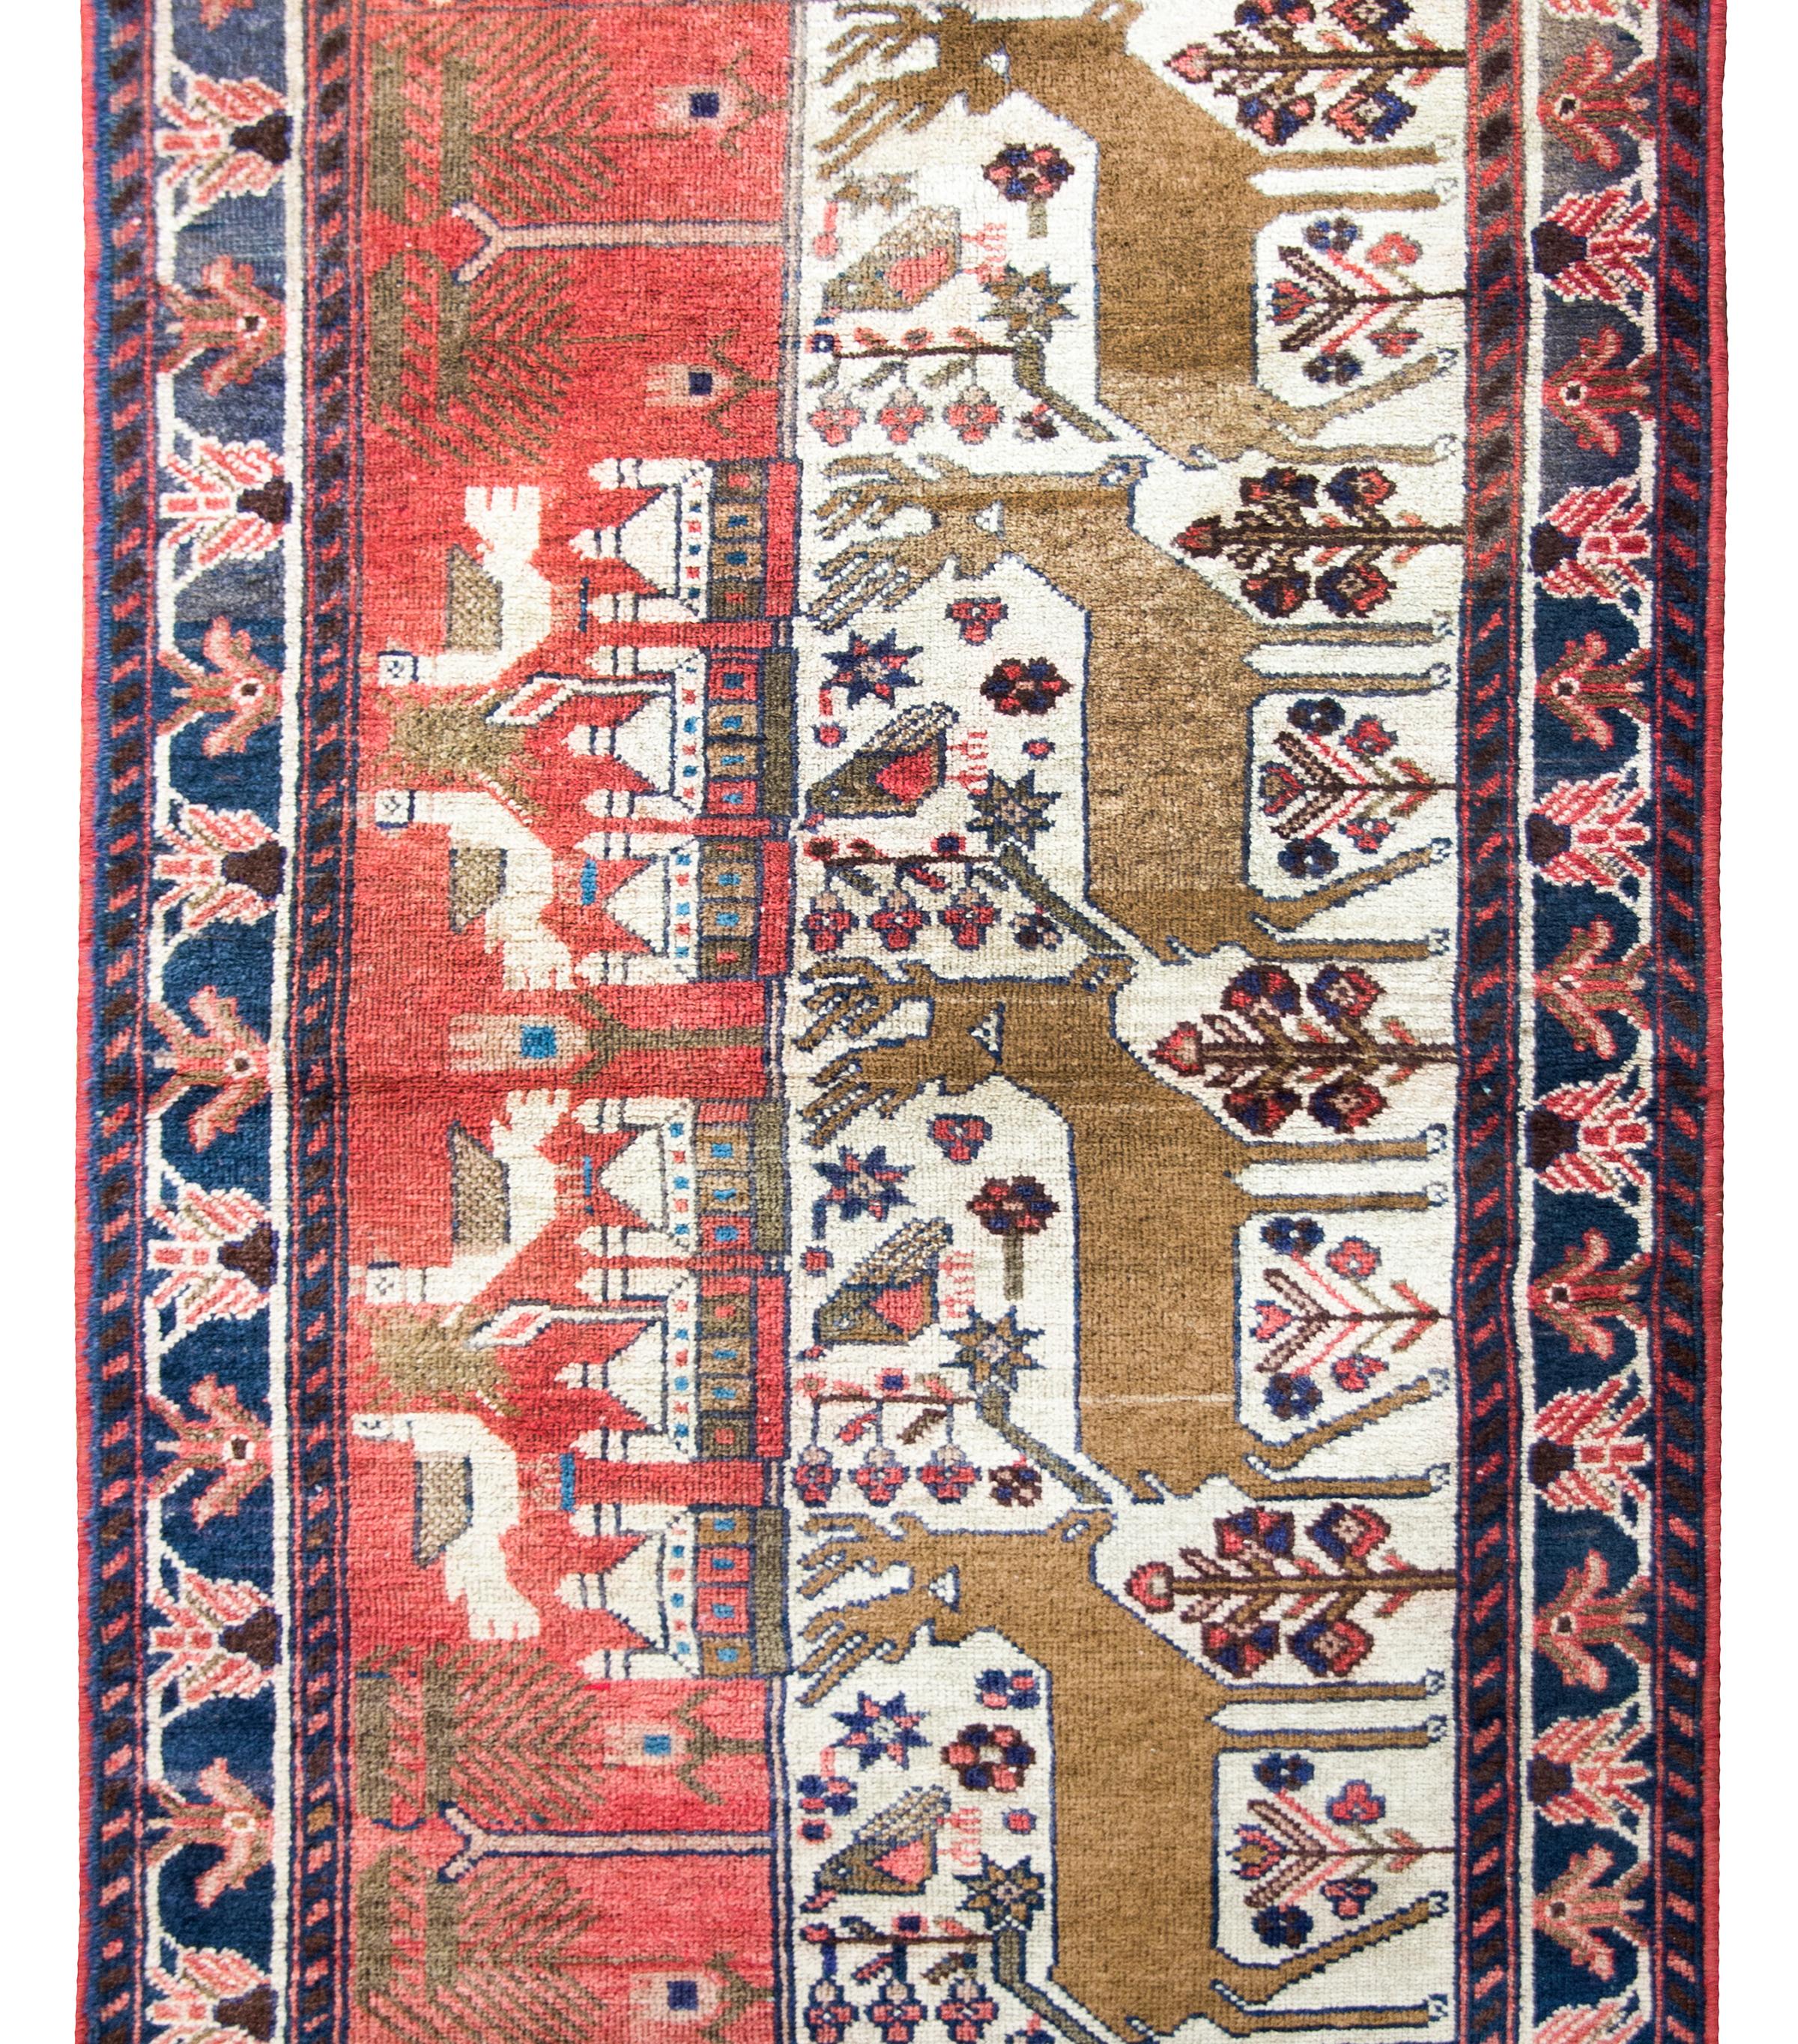 Unglaublich volkstümlicher persischer Klederdasht-Bilderteppich aus der Mitte des 20. Jahrhunderts, der vier große Hirsche inmitten eines Blumenfeldes zeigt, mit einem Dorf im Hintergrund und vier großen Tauben darüber.  Die Umrandung ist einfach